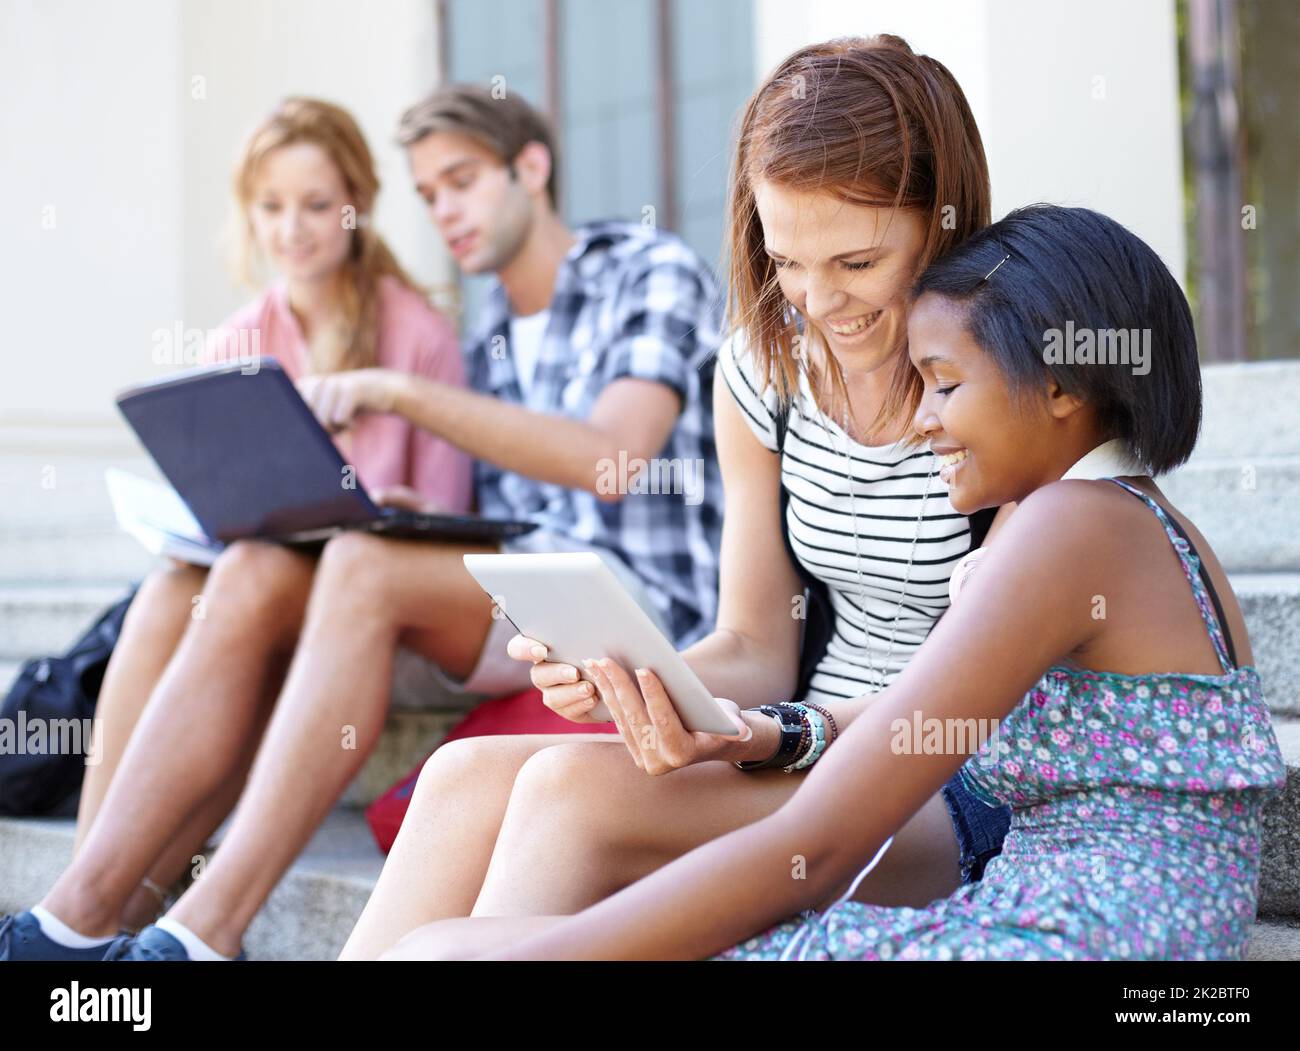 Adolescenti tecnologici. Giovani adolescenti che guardano i loro notebook e tablet digitali mentre socializzano all'aperto. Foto Stock